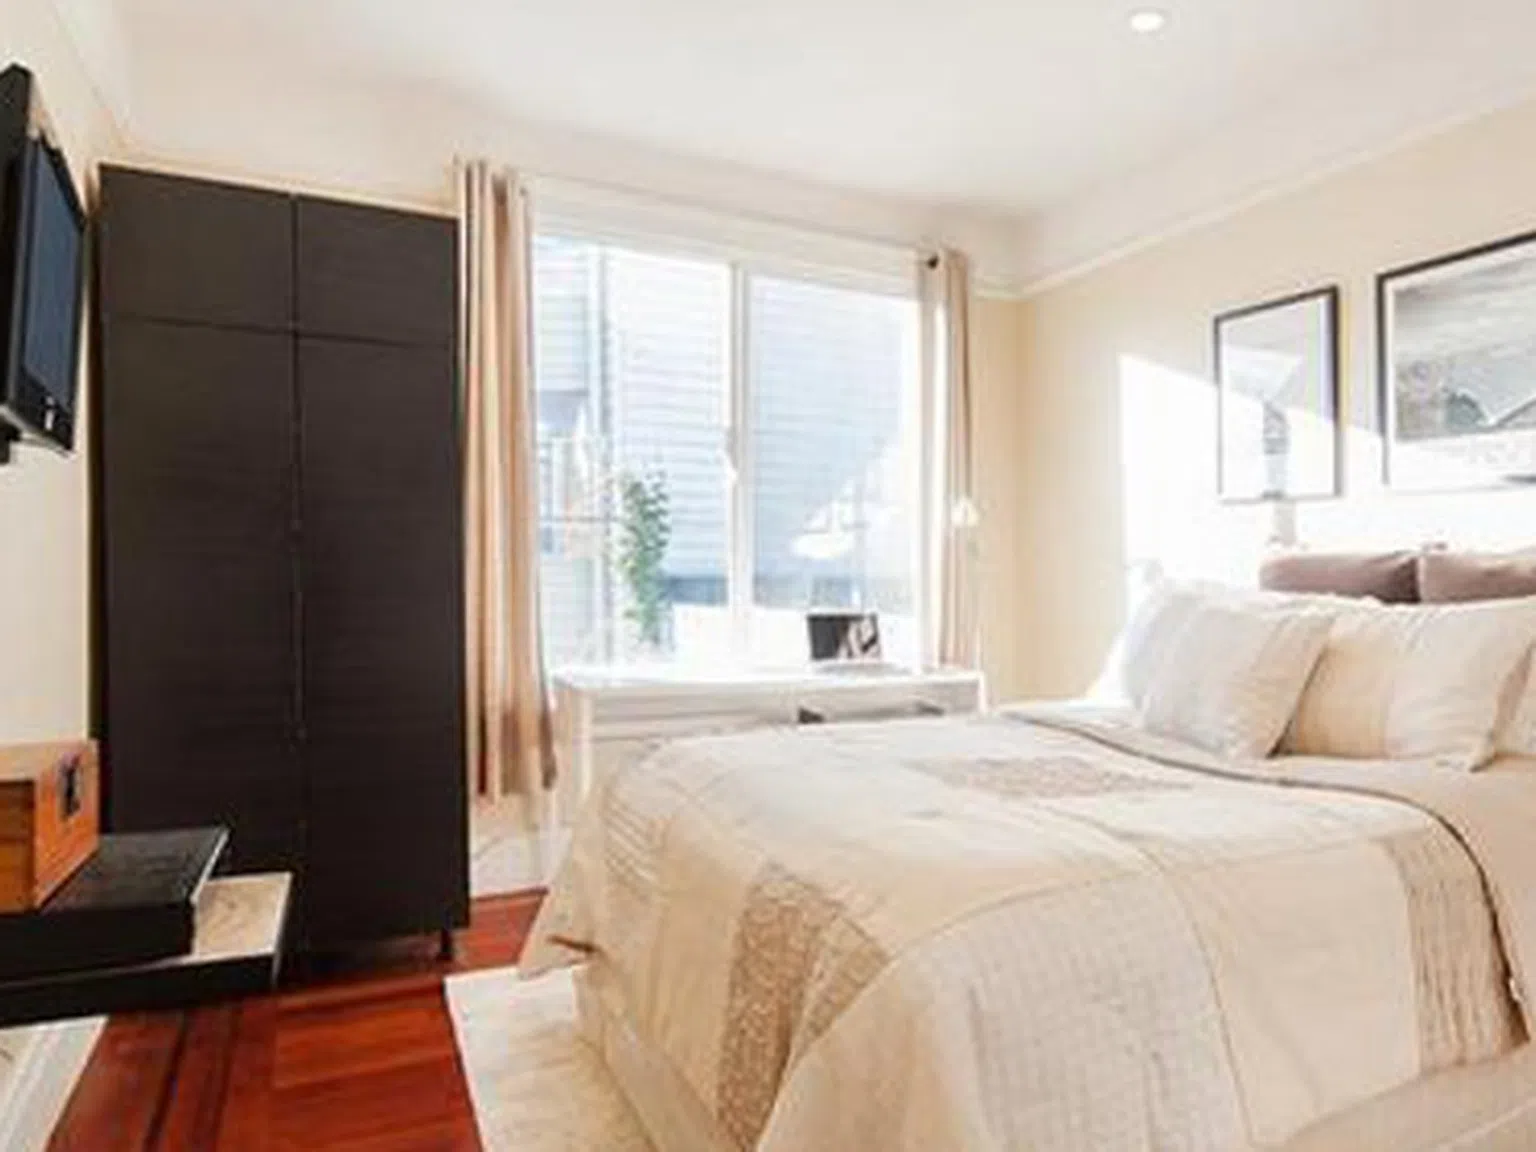 Най-малкият апартамент в Сан Франциско – 24 кв.м за 425000 долара